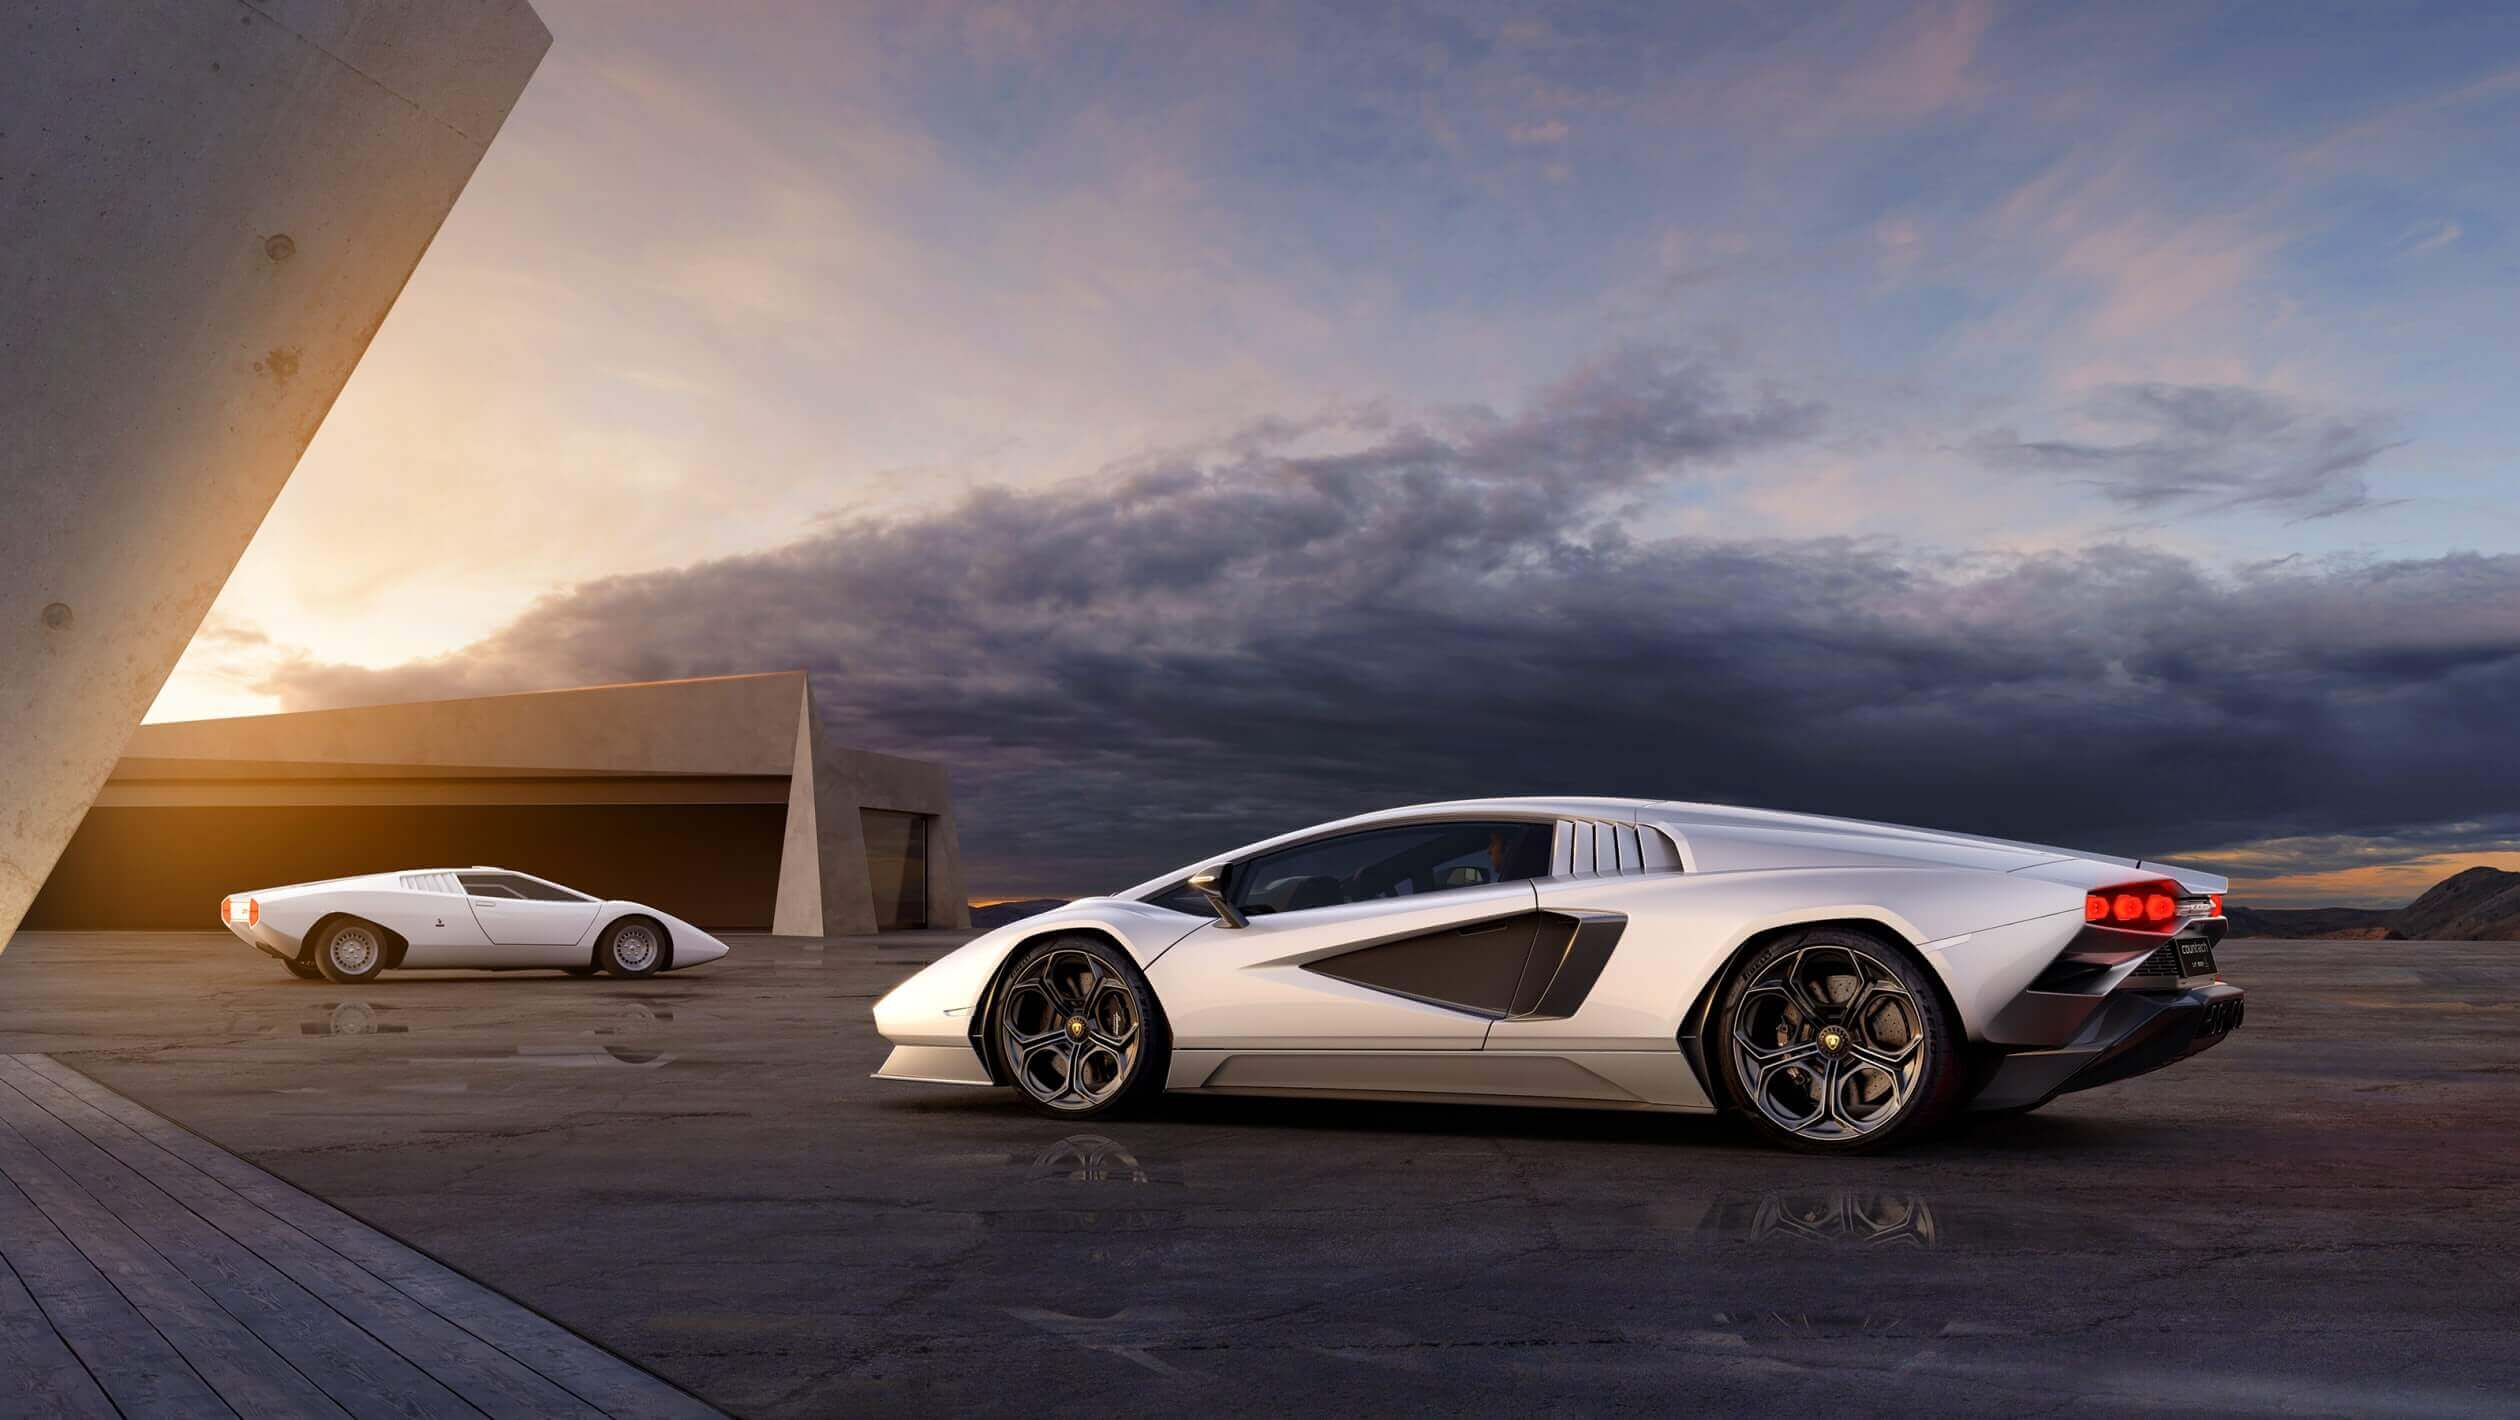 Lamborghini remake classic Countach model for 2022